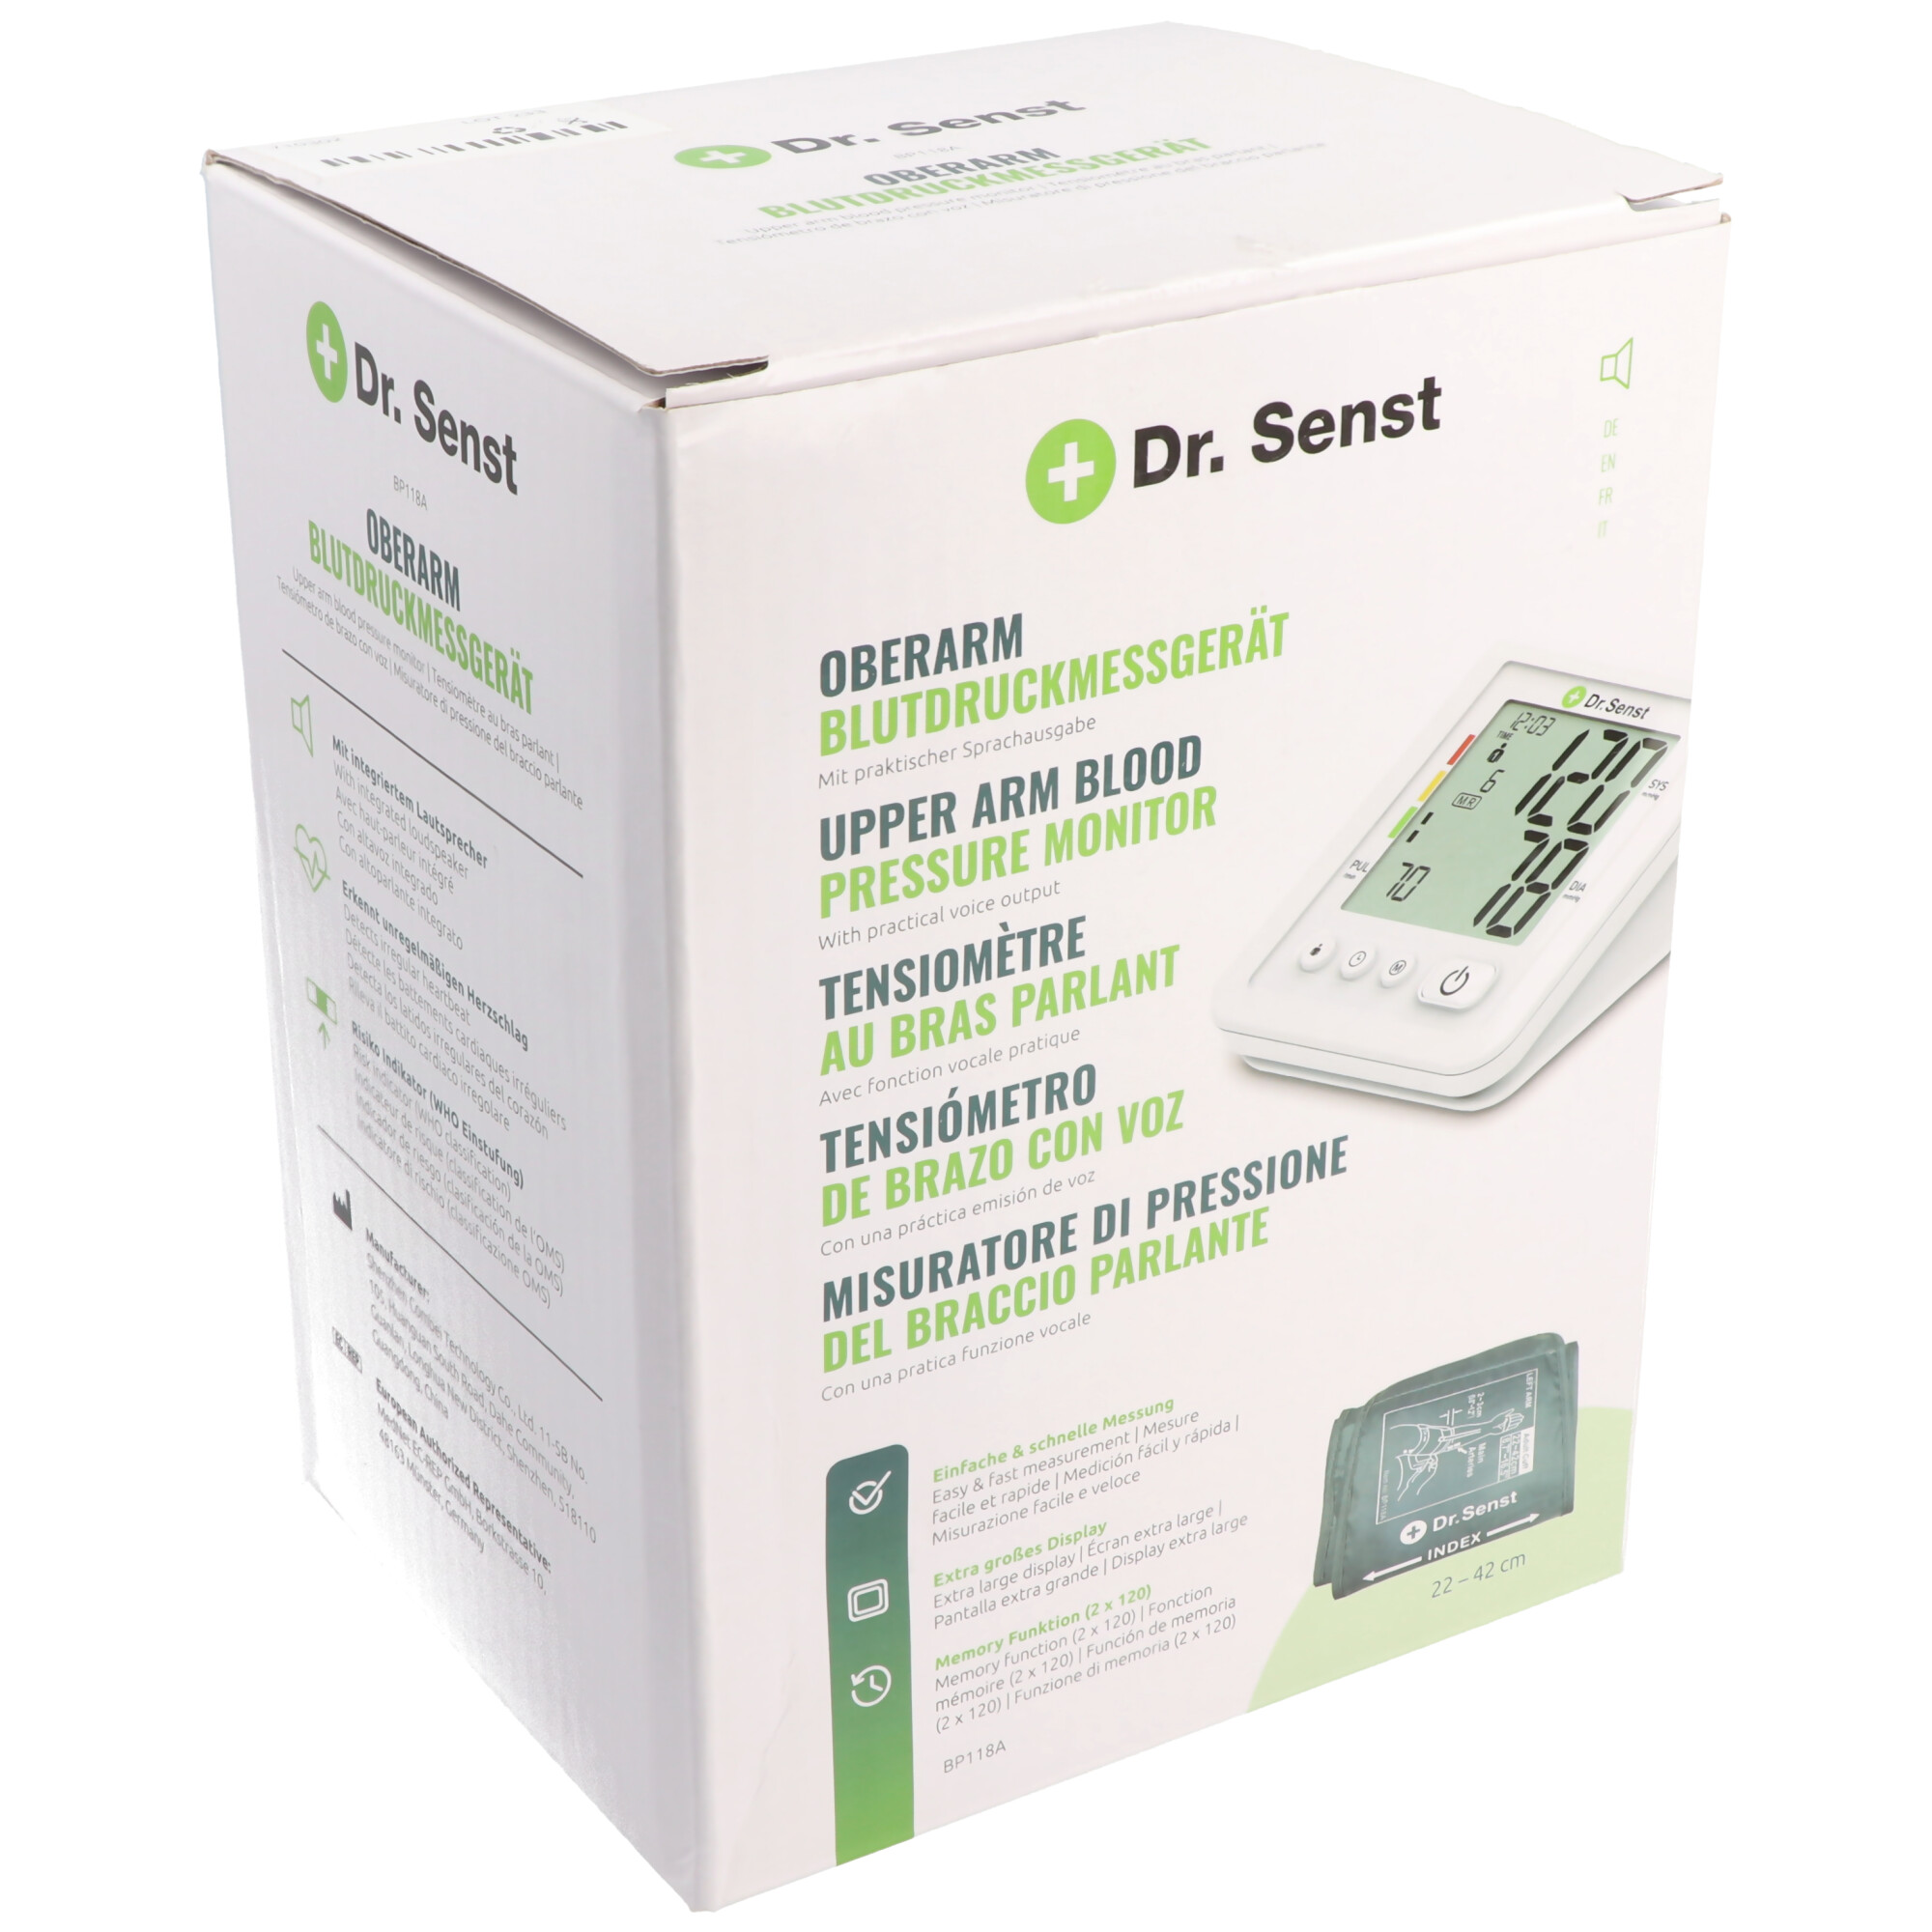 Dr. Senst® Oberarm-Blutdruckmessgerät BP118A mit Sprachausgabe